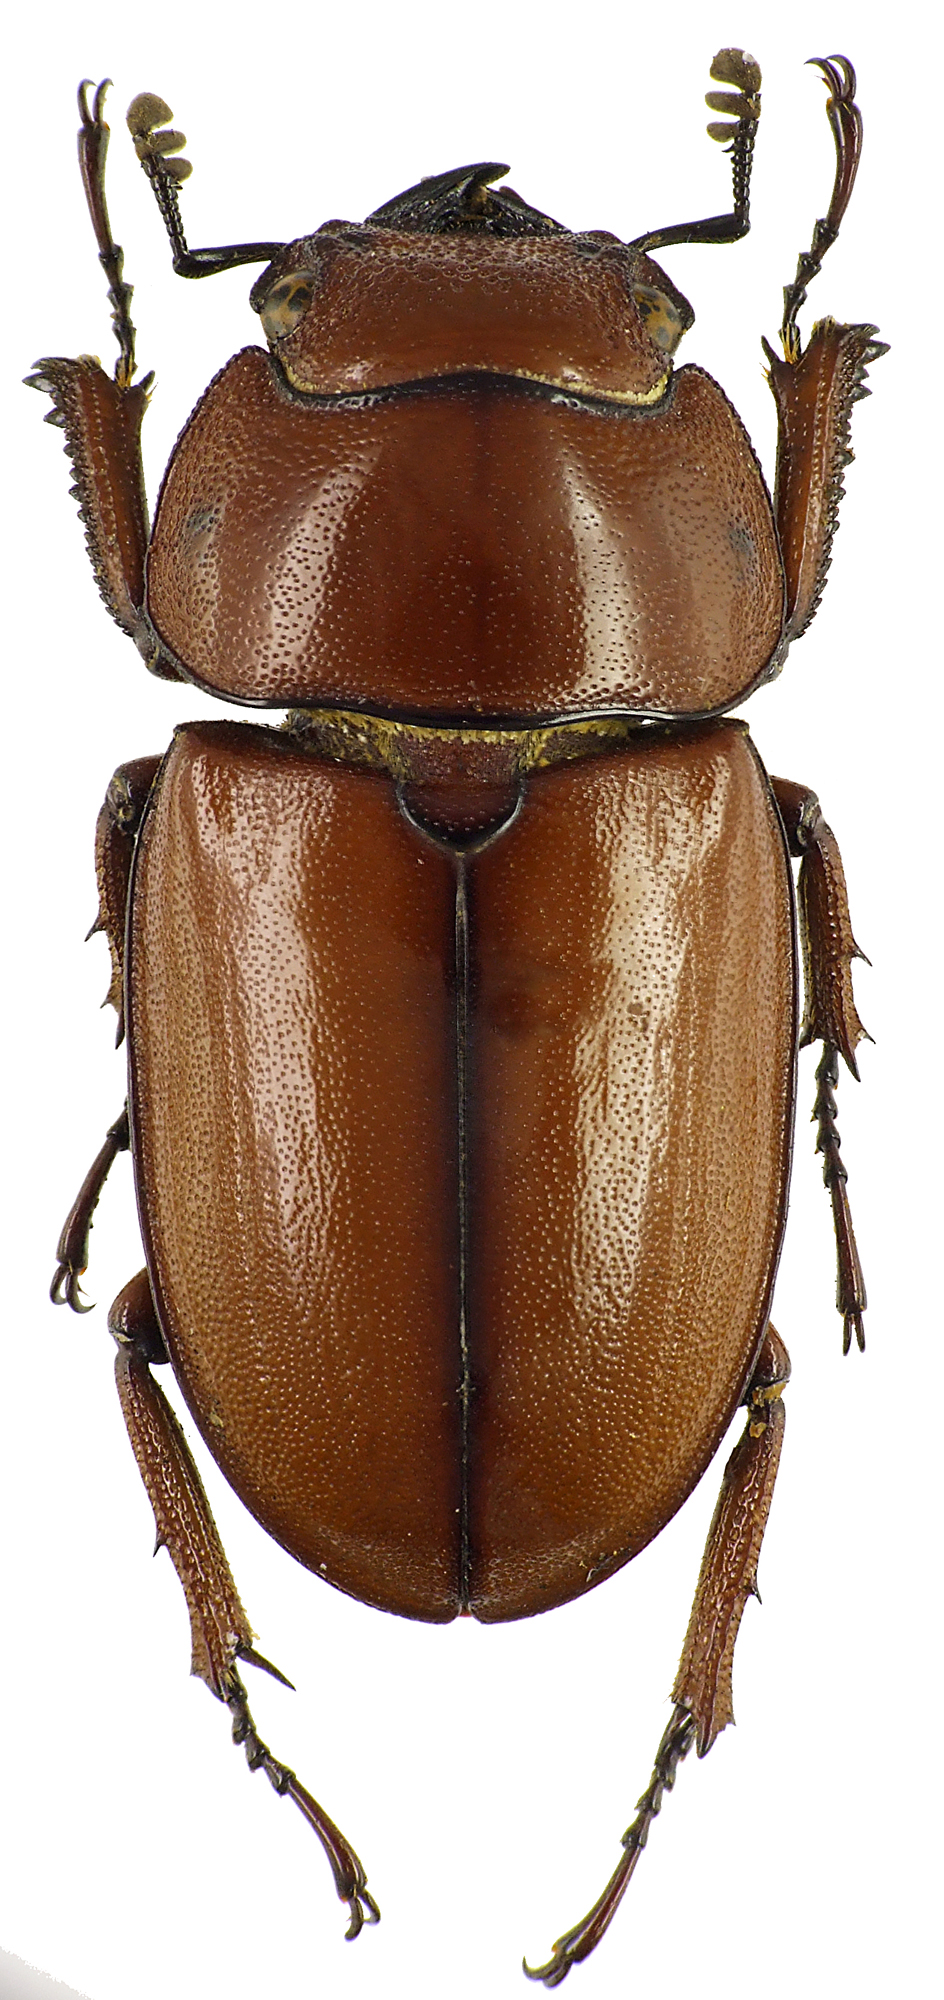 Prosopocoilus astacoides poultoni 43548cz50.jpg